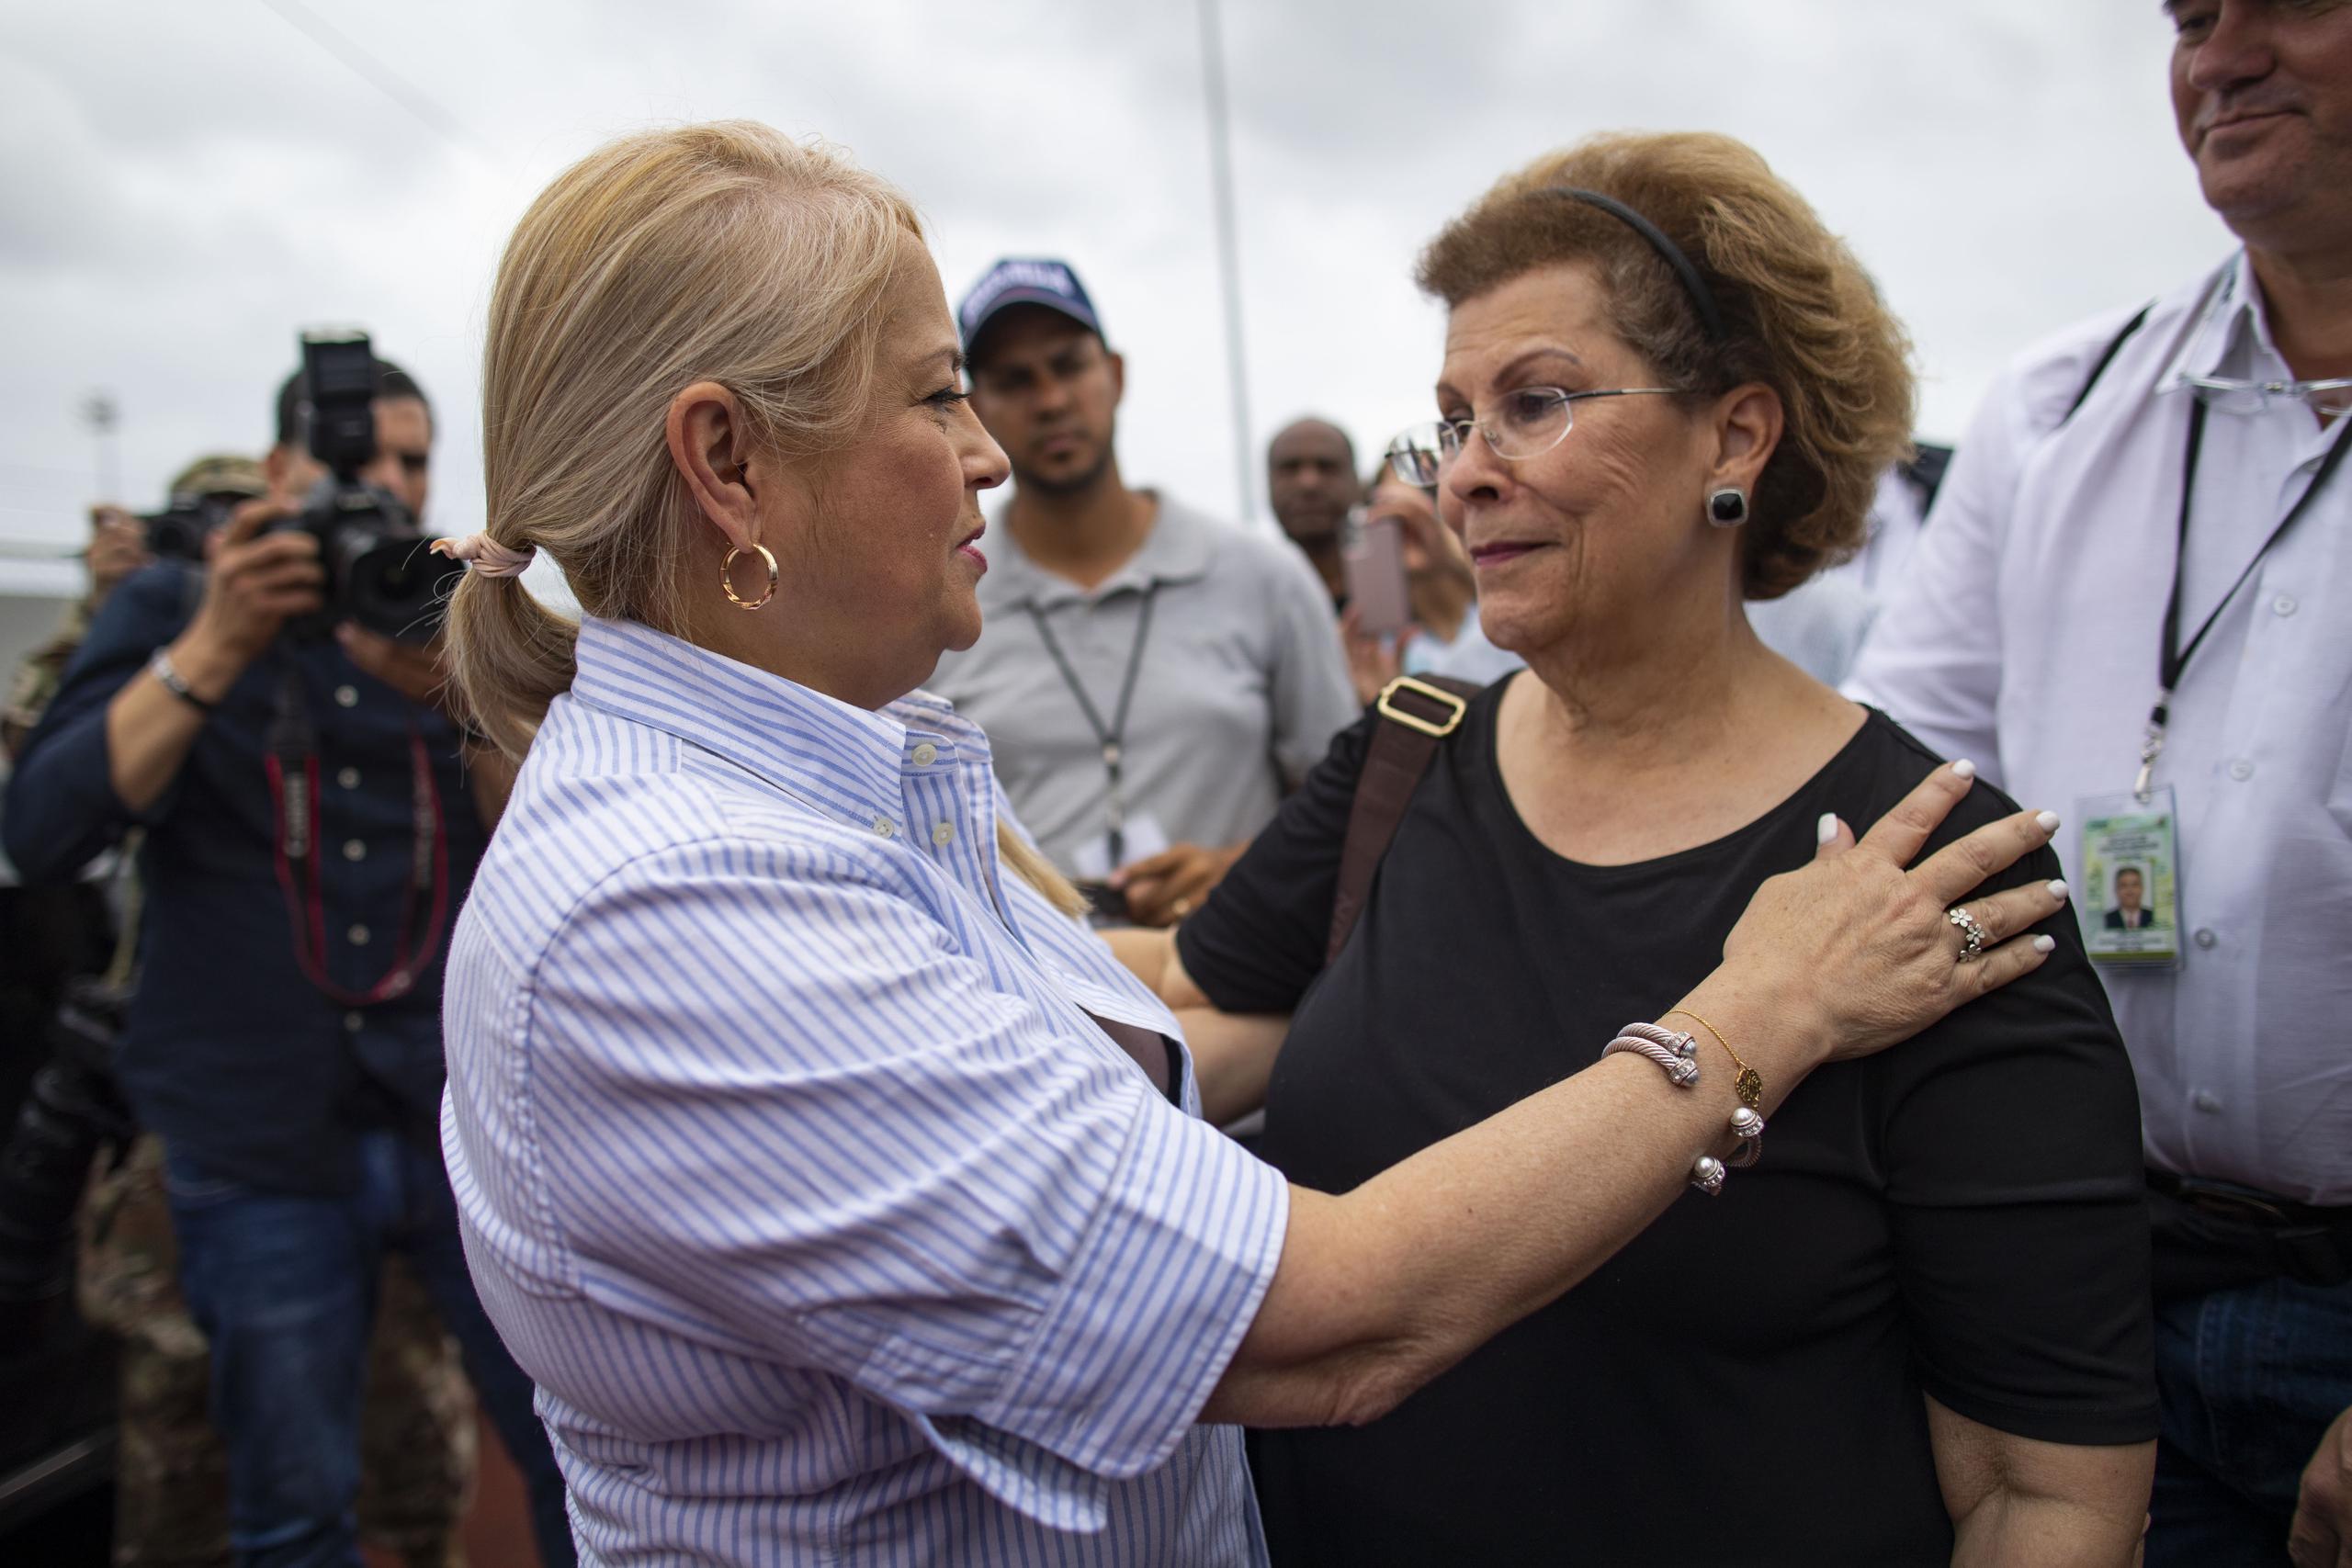 La gobernadora Wanda Vázquez había confirmado que Antonia Coello Novello era una de los recursos que evaluó para ocupar la silla de titular del Departamento de Salud.